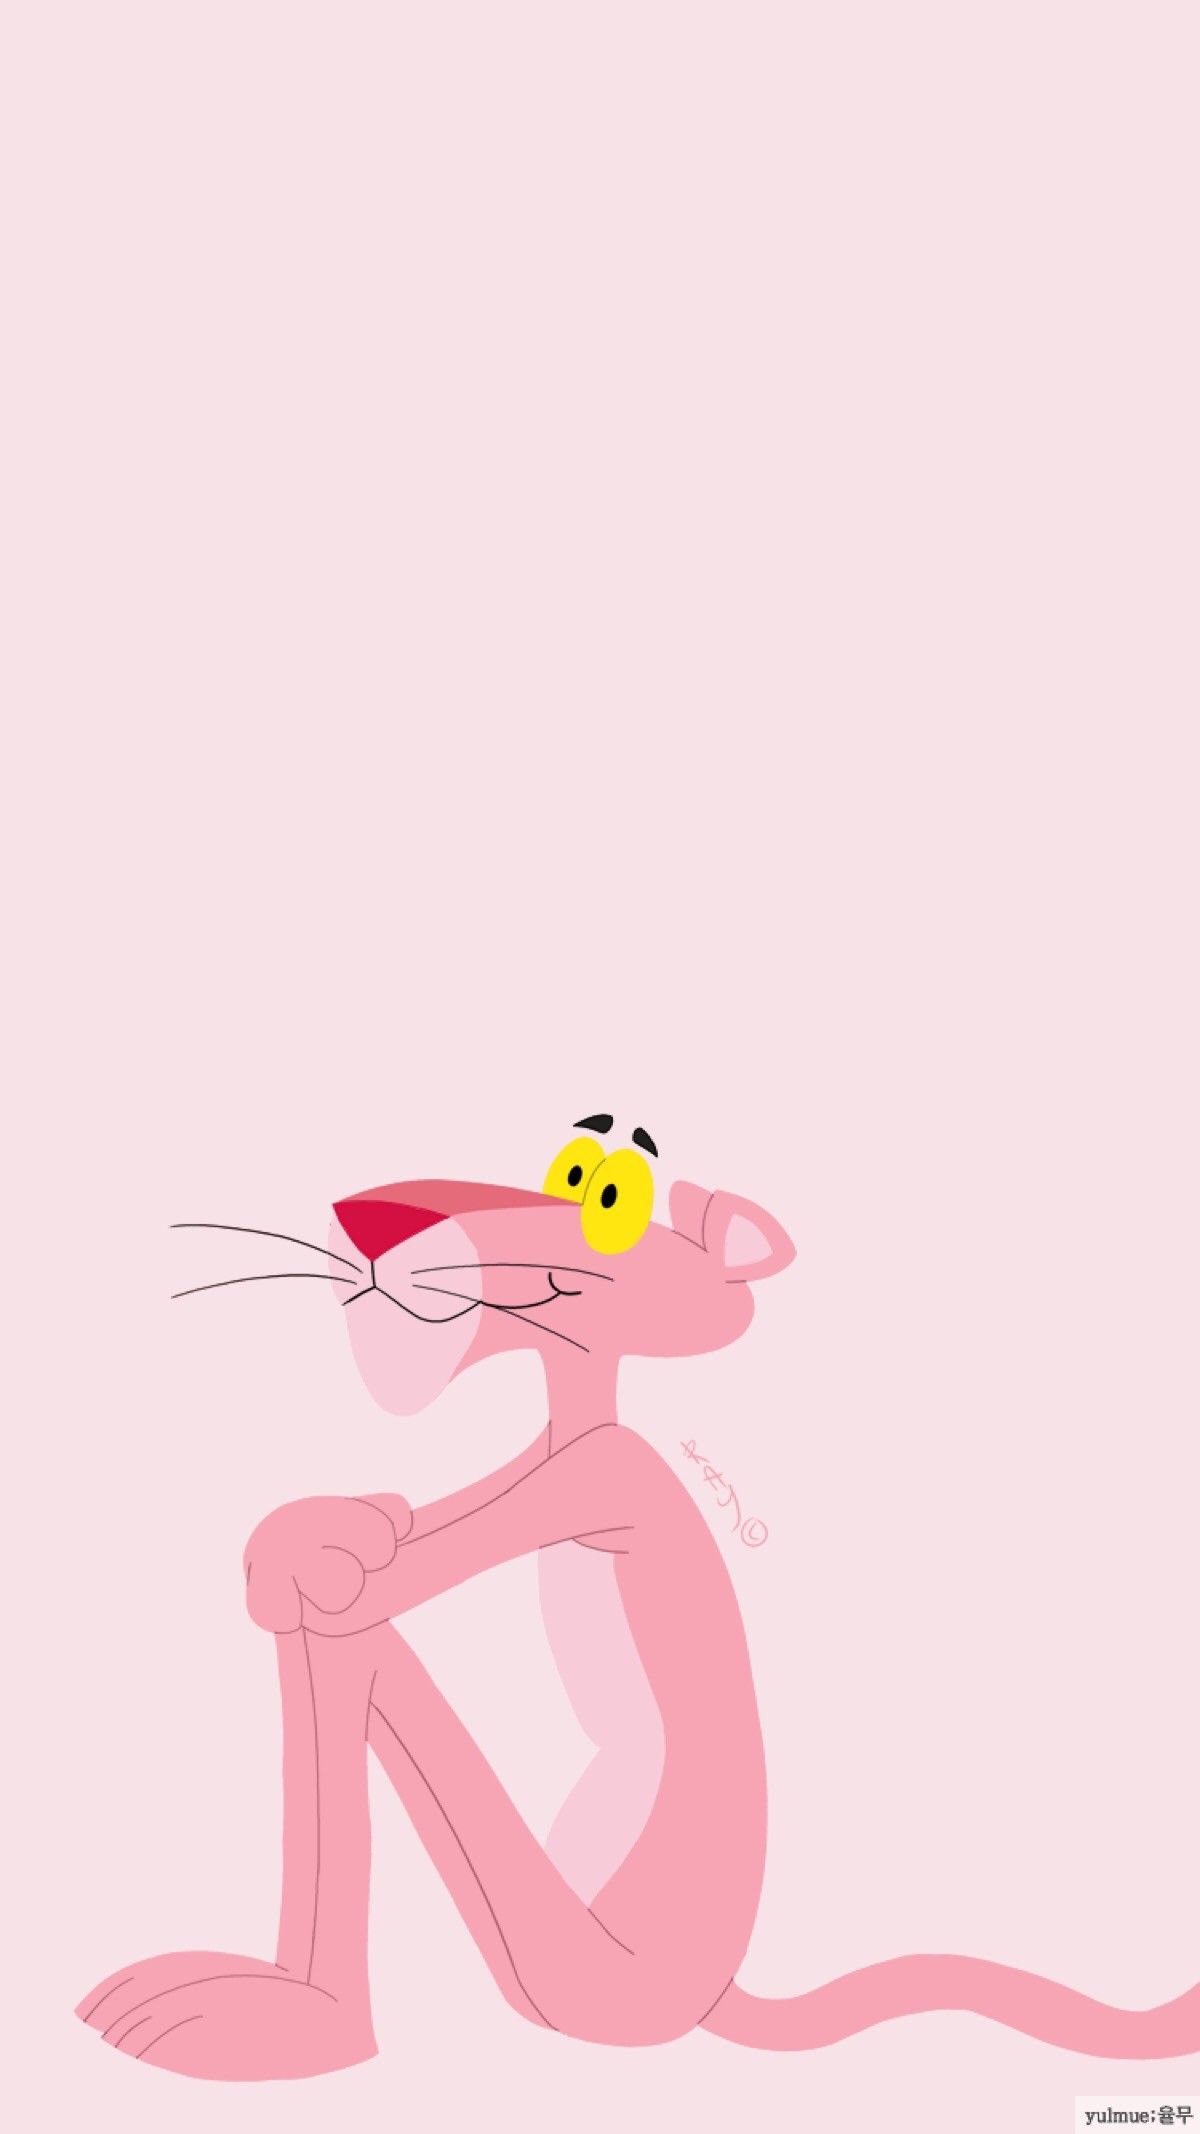 72+] Pink Panther Wallpaper